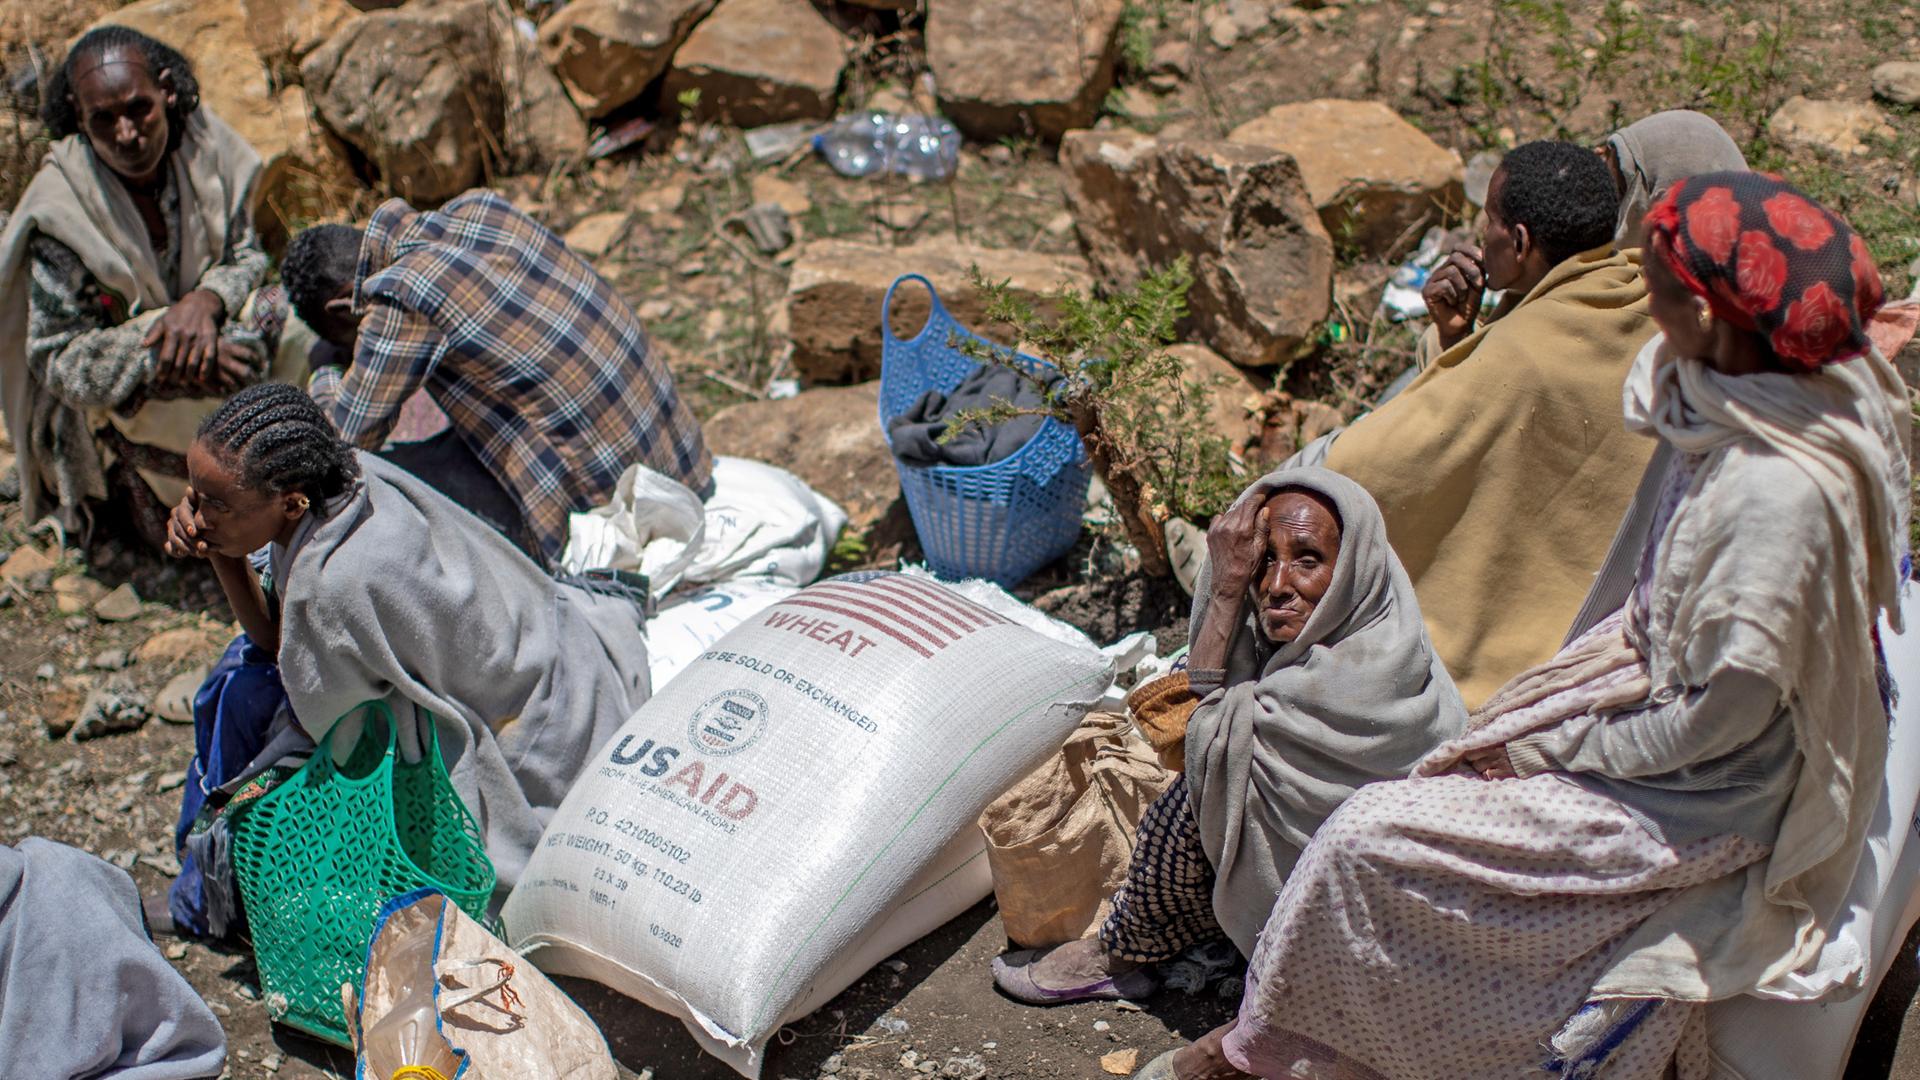 Äthiopien, Agula: Mehrere Menschen sitzen neben einem Sack mit Weizen, nachdem dieser von der Relief Society of Tigray in der Region Tigray im Norden Äthiopiens verteilt wurde.